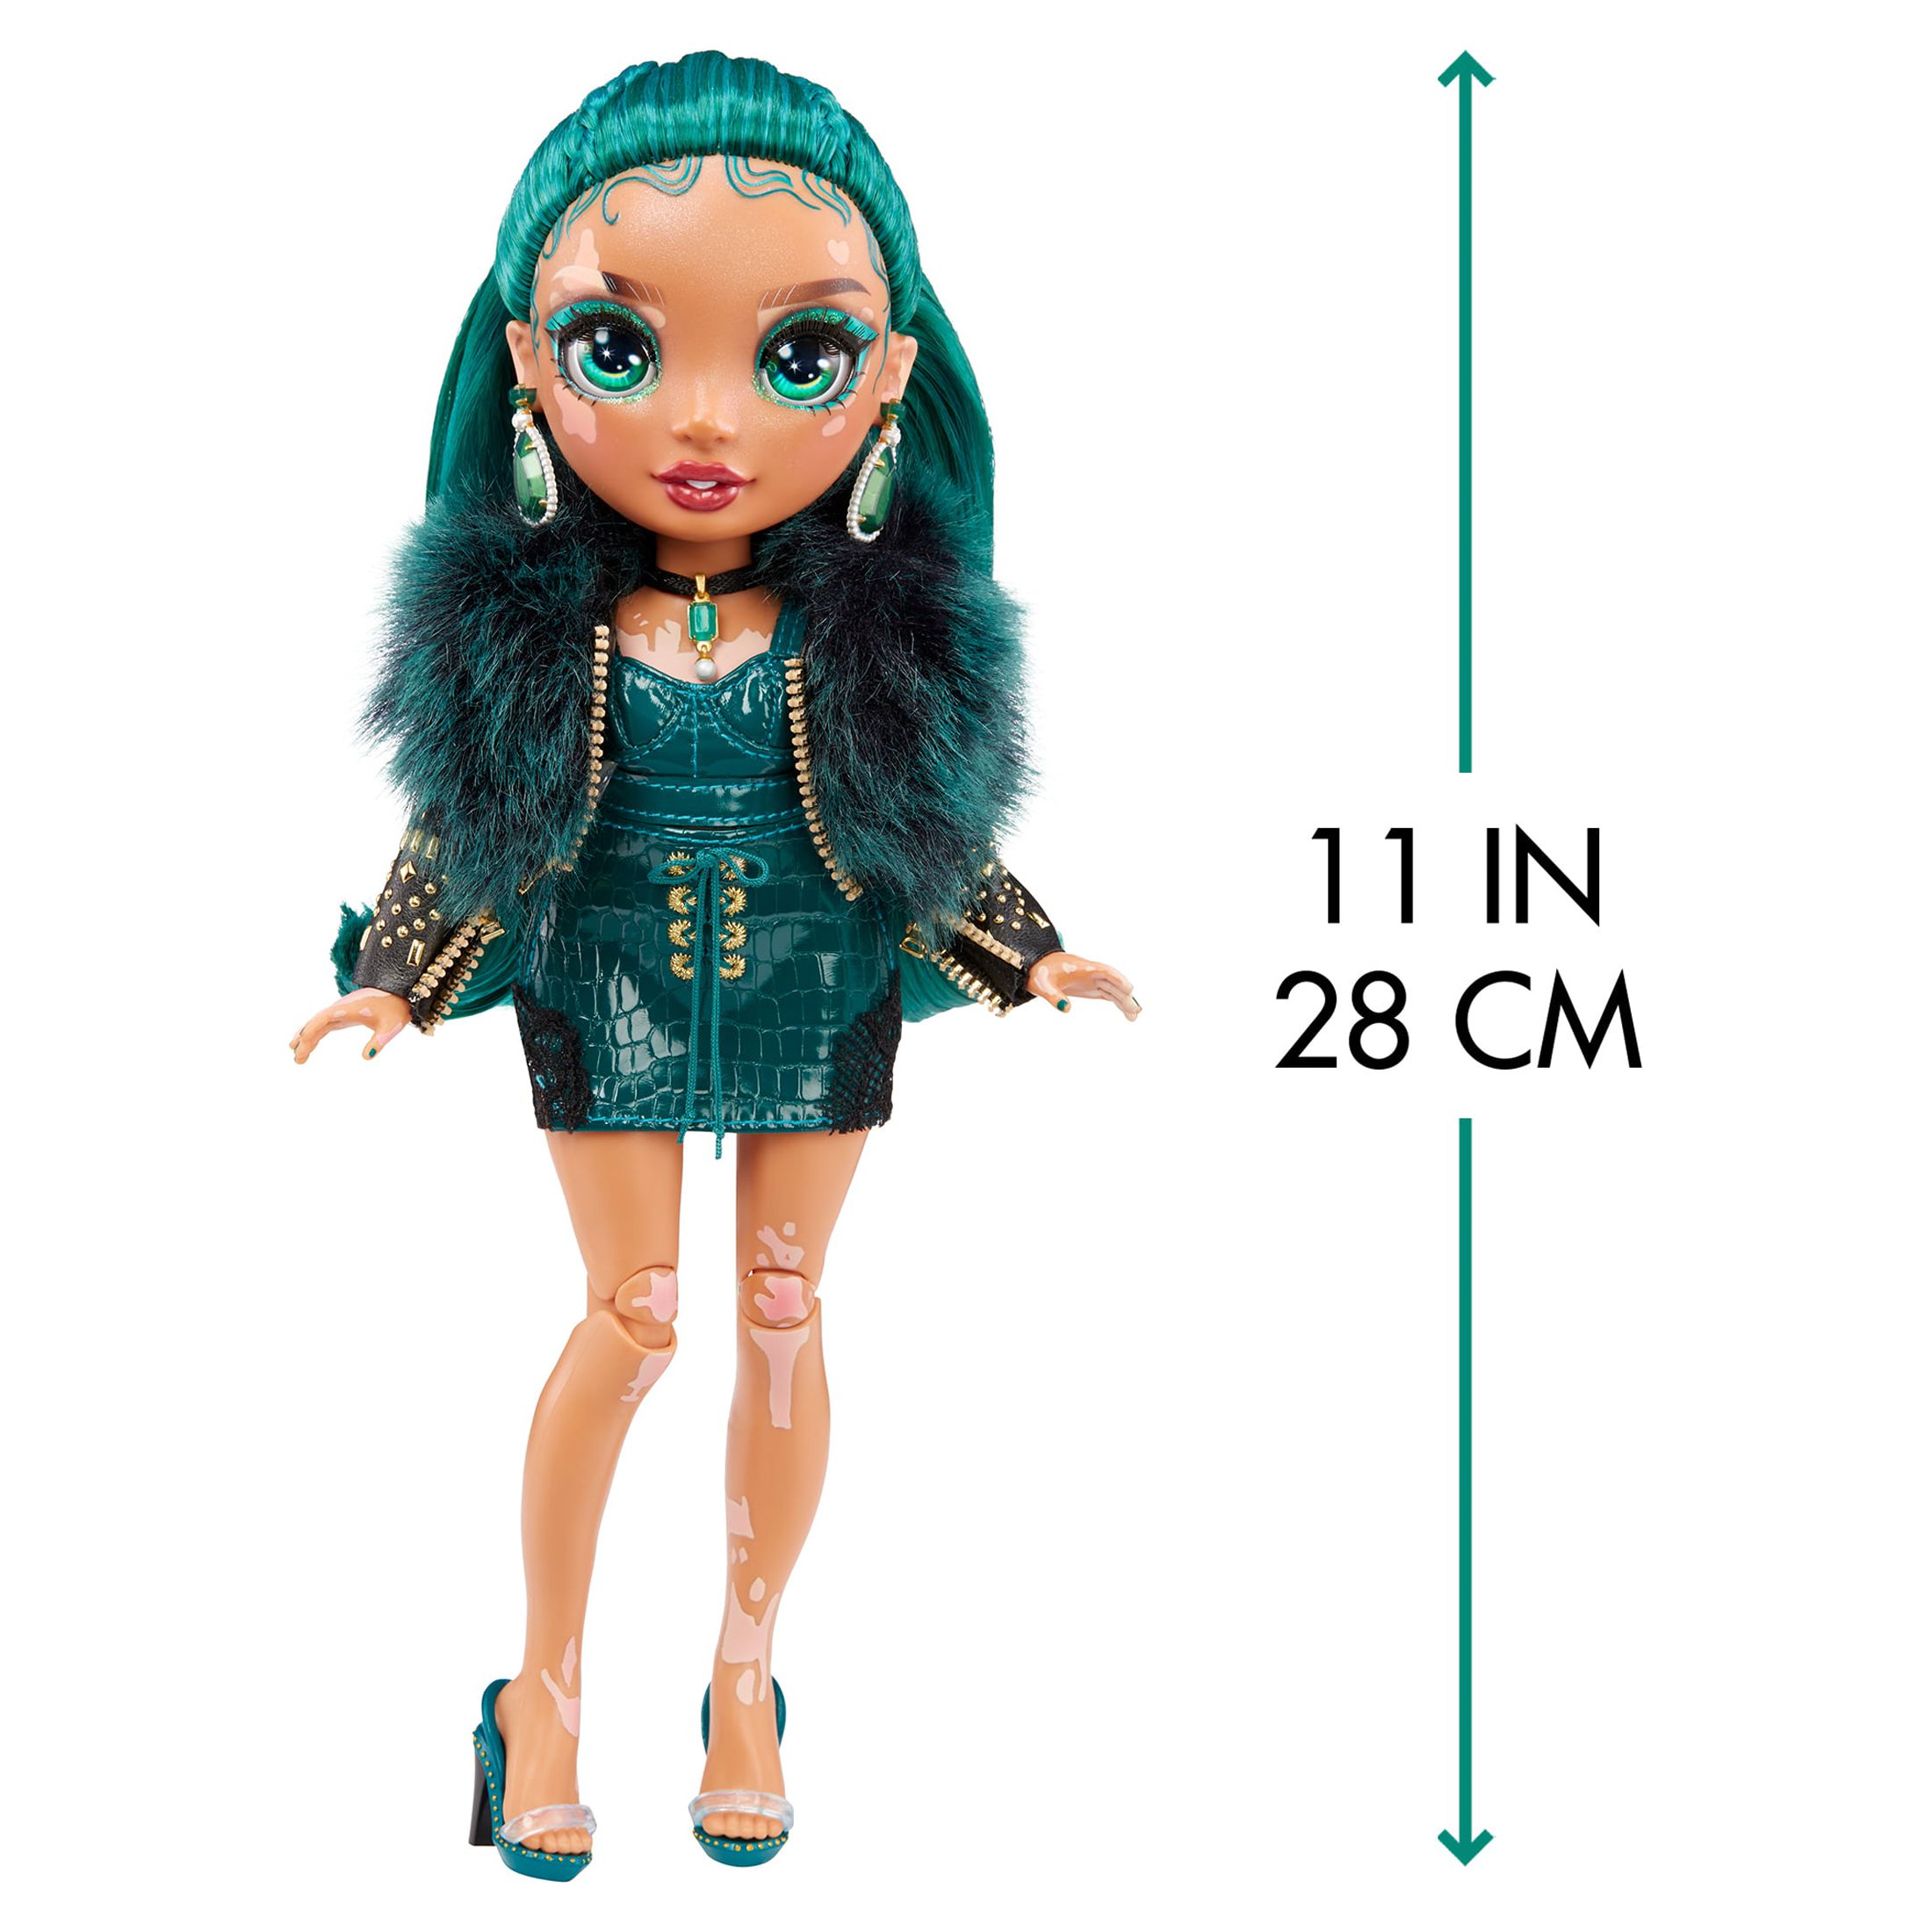 Rainbow High Jewel Richie- Emerald Green Fashion Doll with Vitiligo. 2 ...